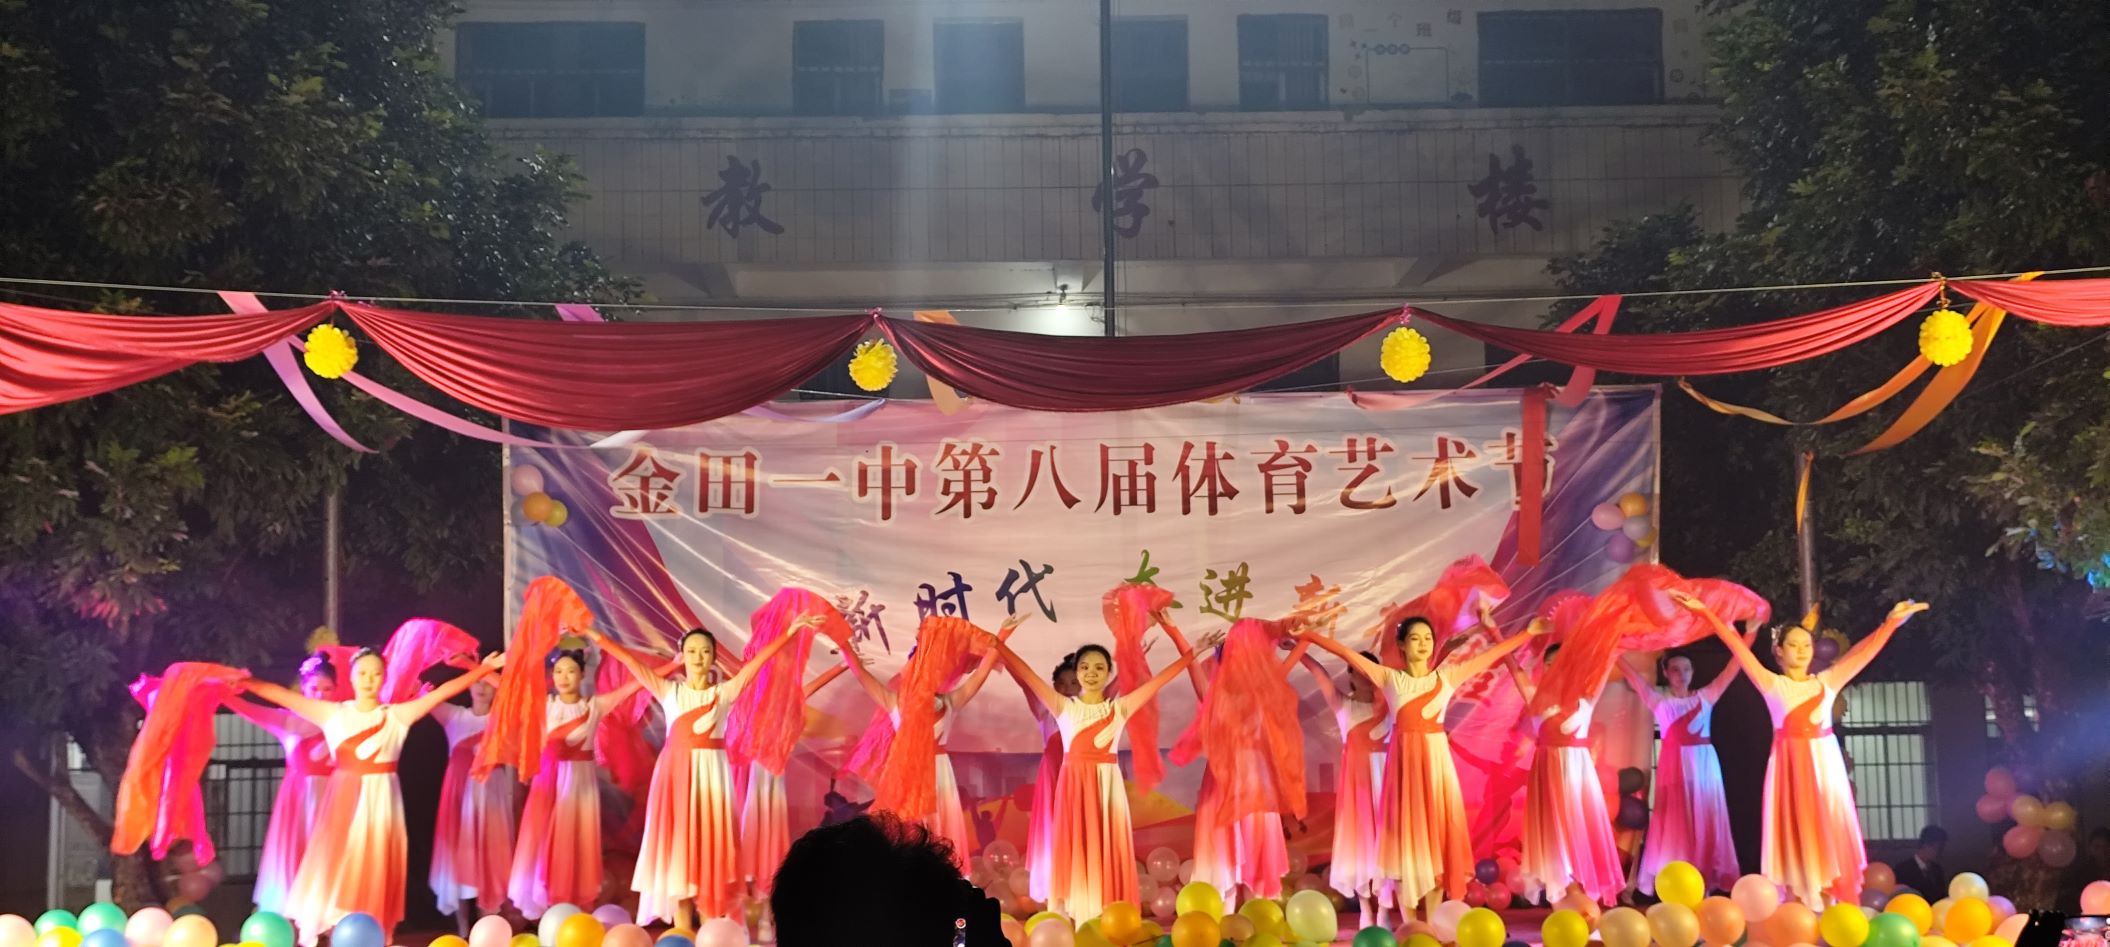 桂平市艺术学校到金田一中、石咀二中参与晚会表演 丨桂平市艺术学校